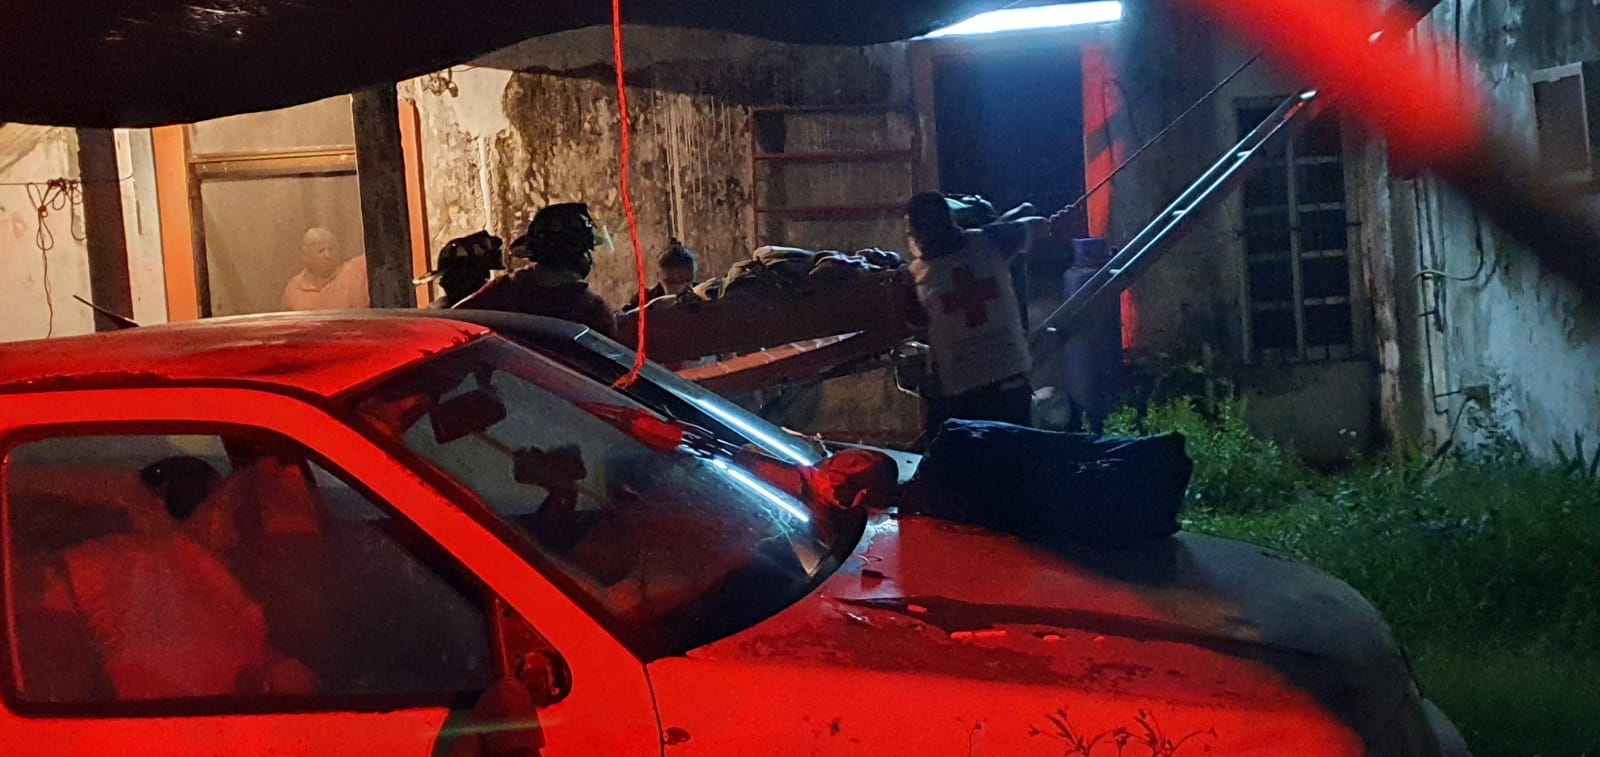 Traslado de paciente a un hospital genera movilización de bomberos en Cozumel